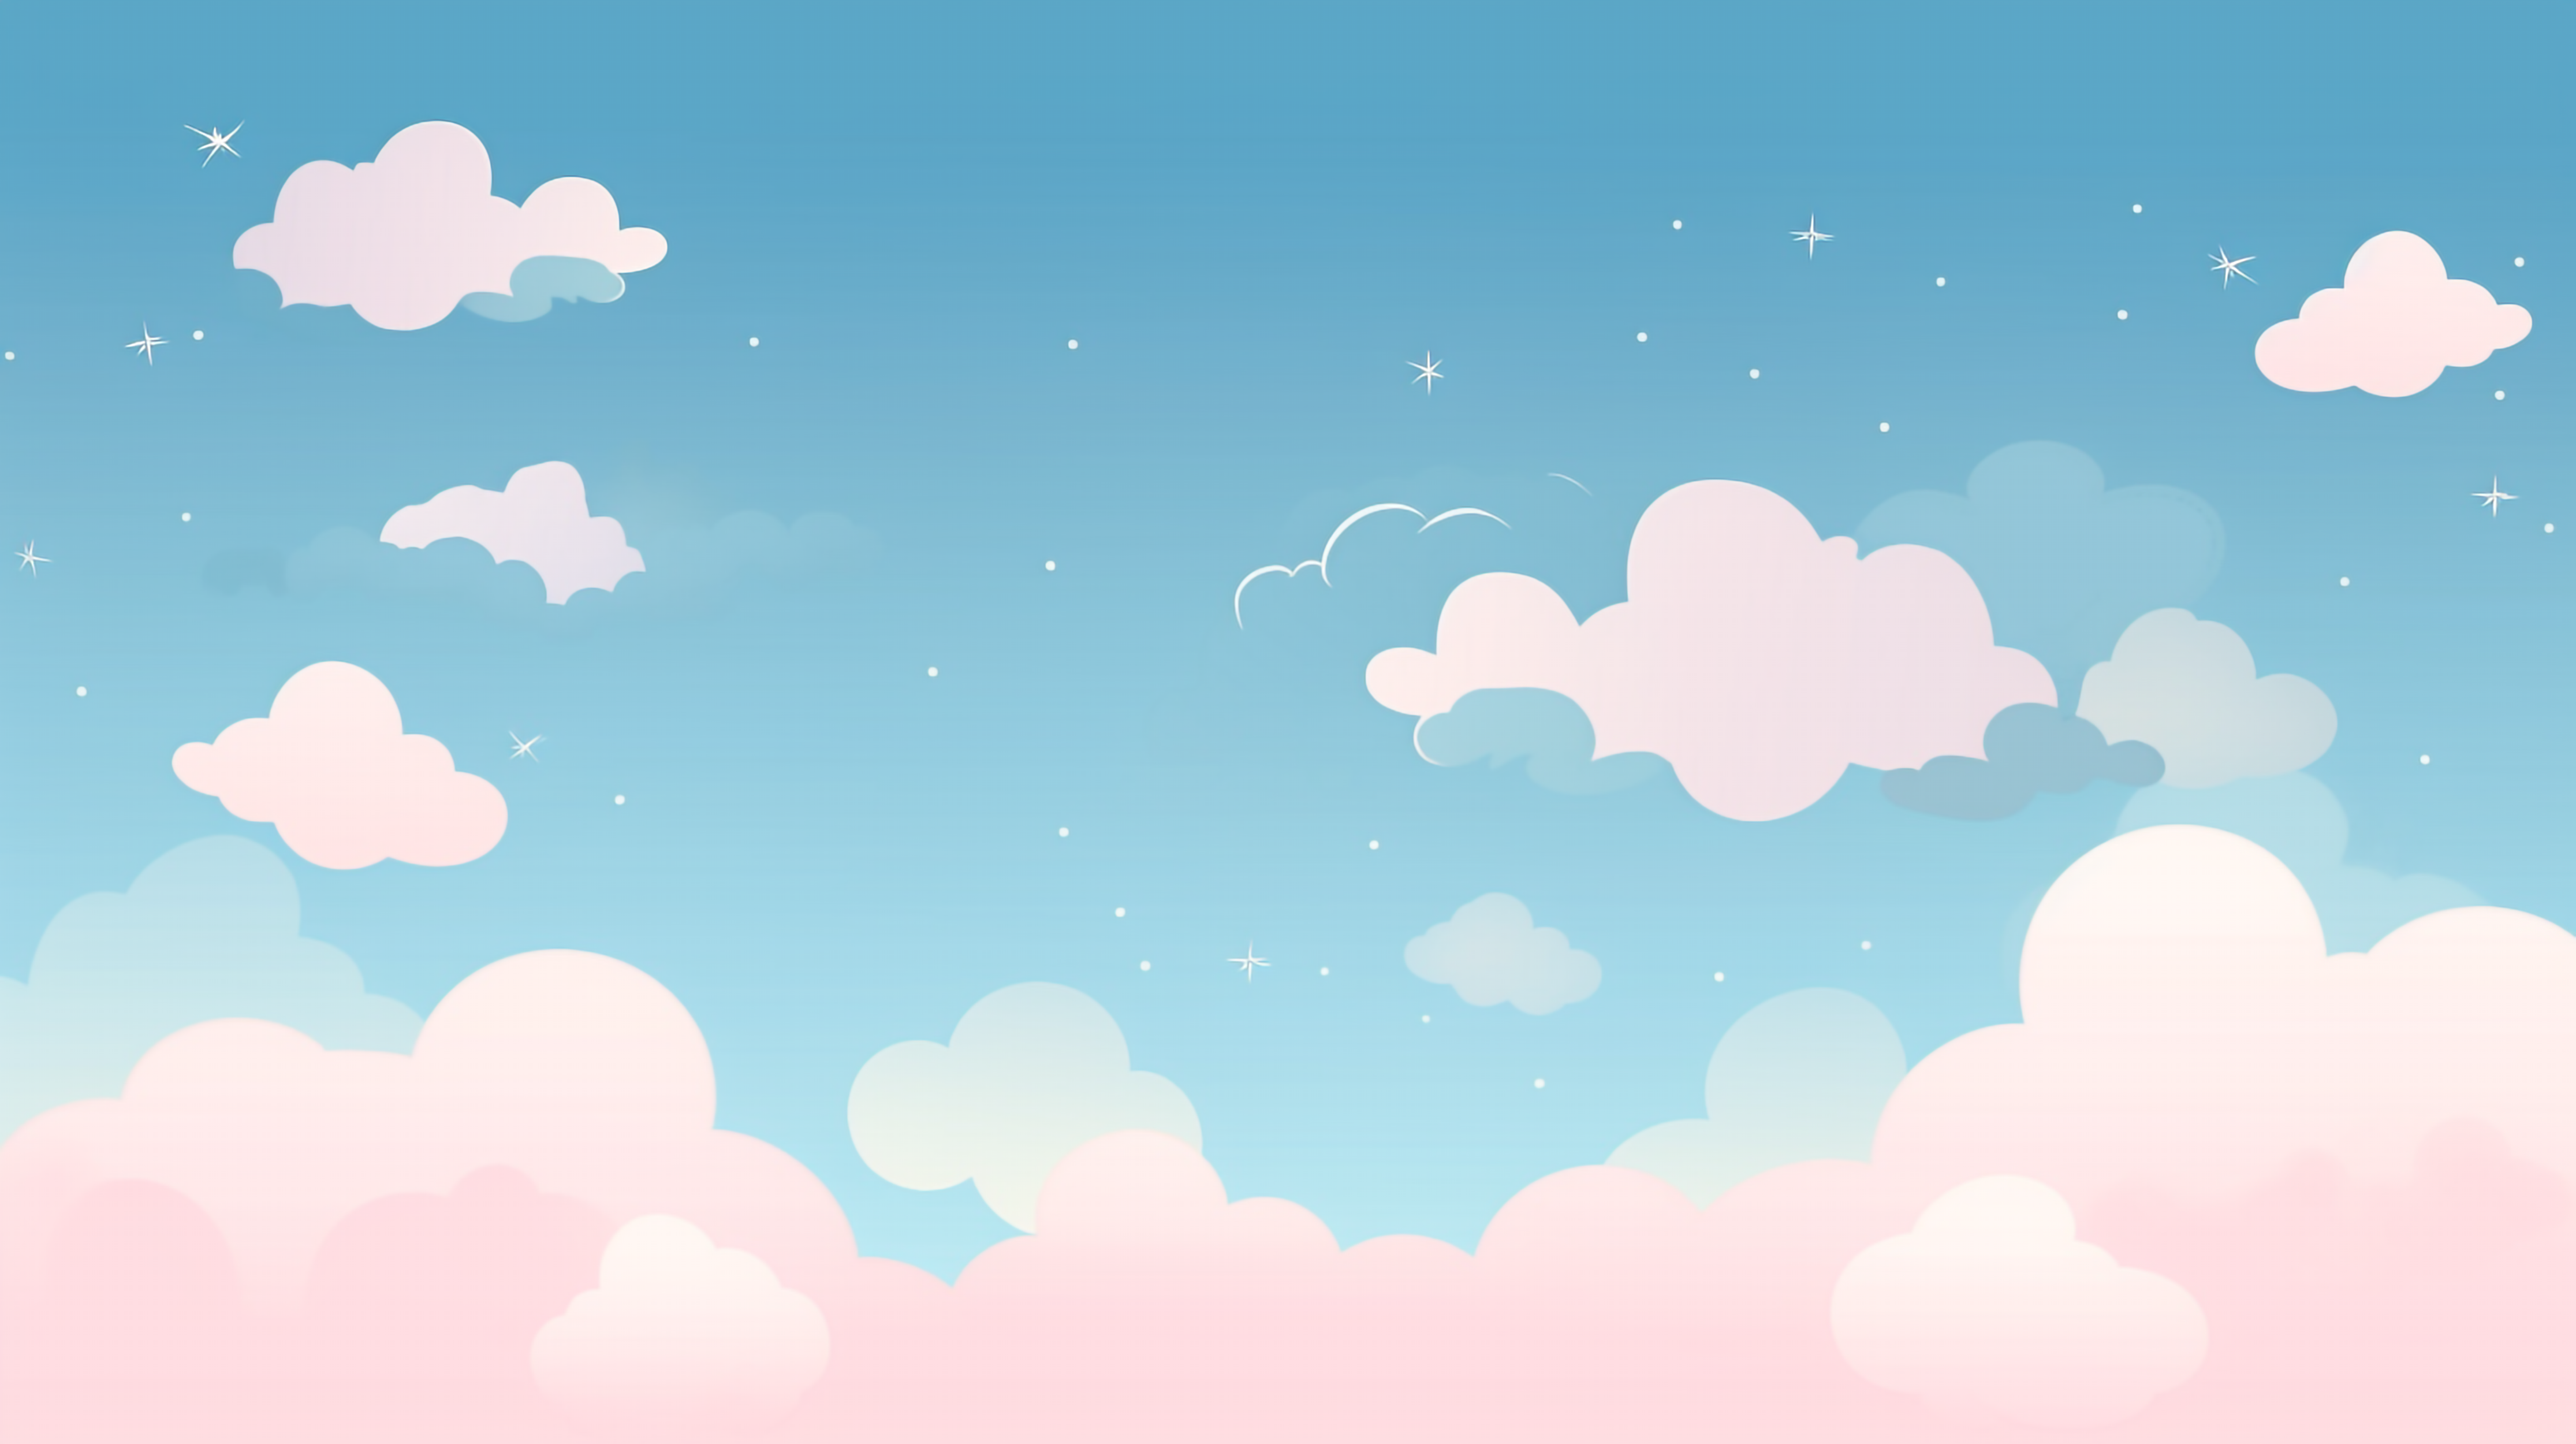 梦幻可爱的天空卡通天空创意插画简单背景图片